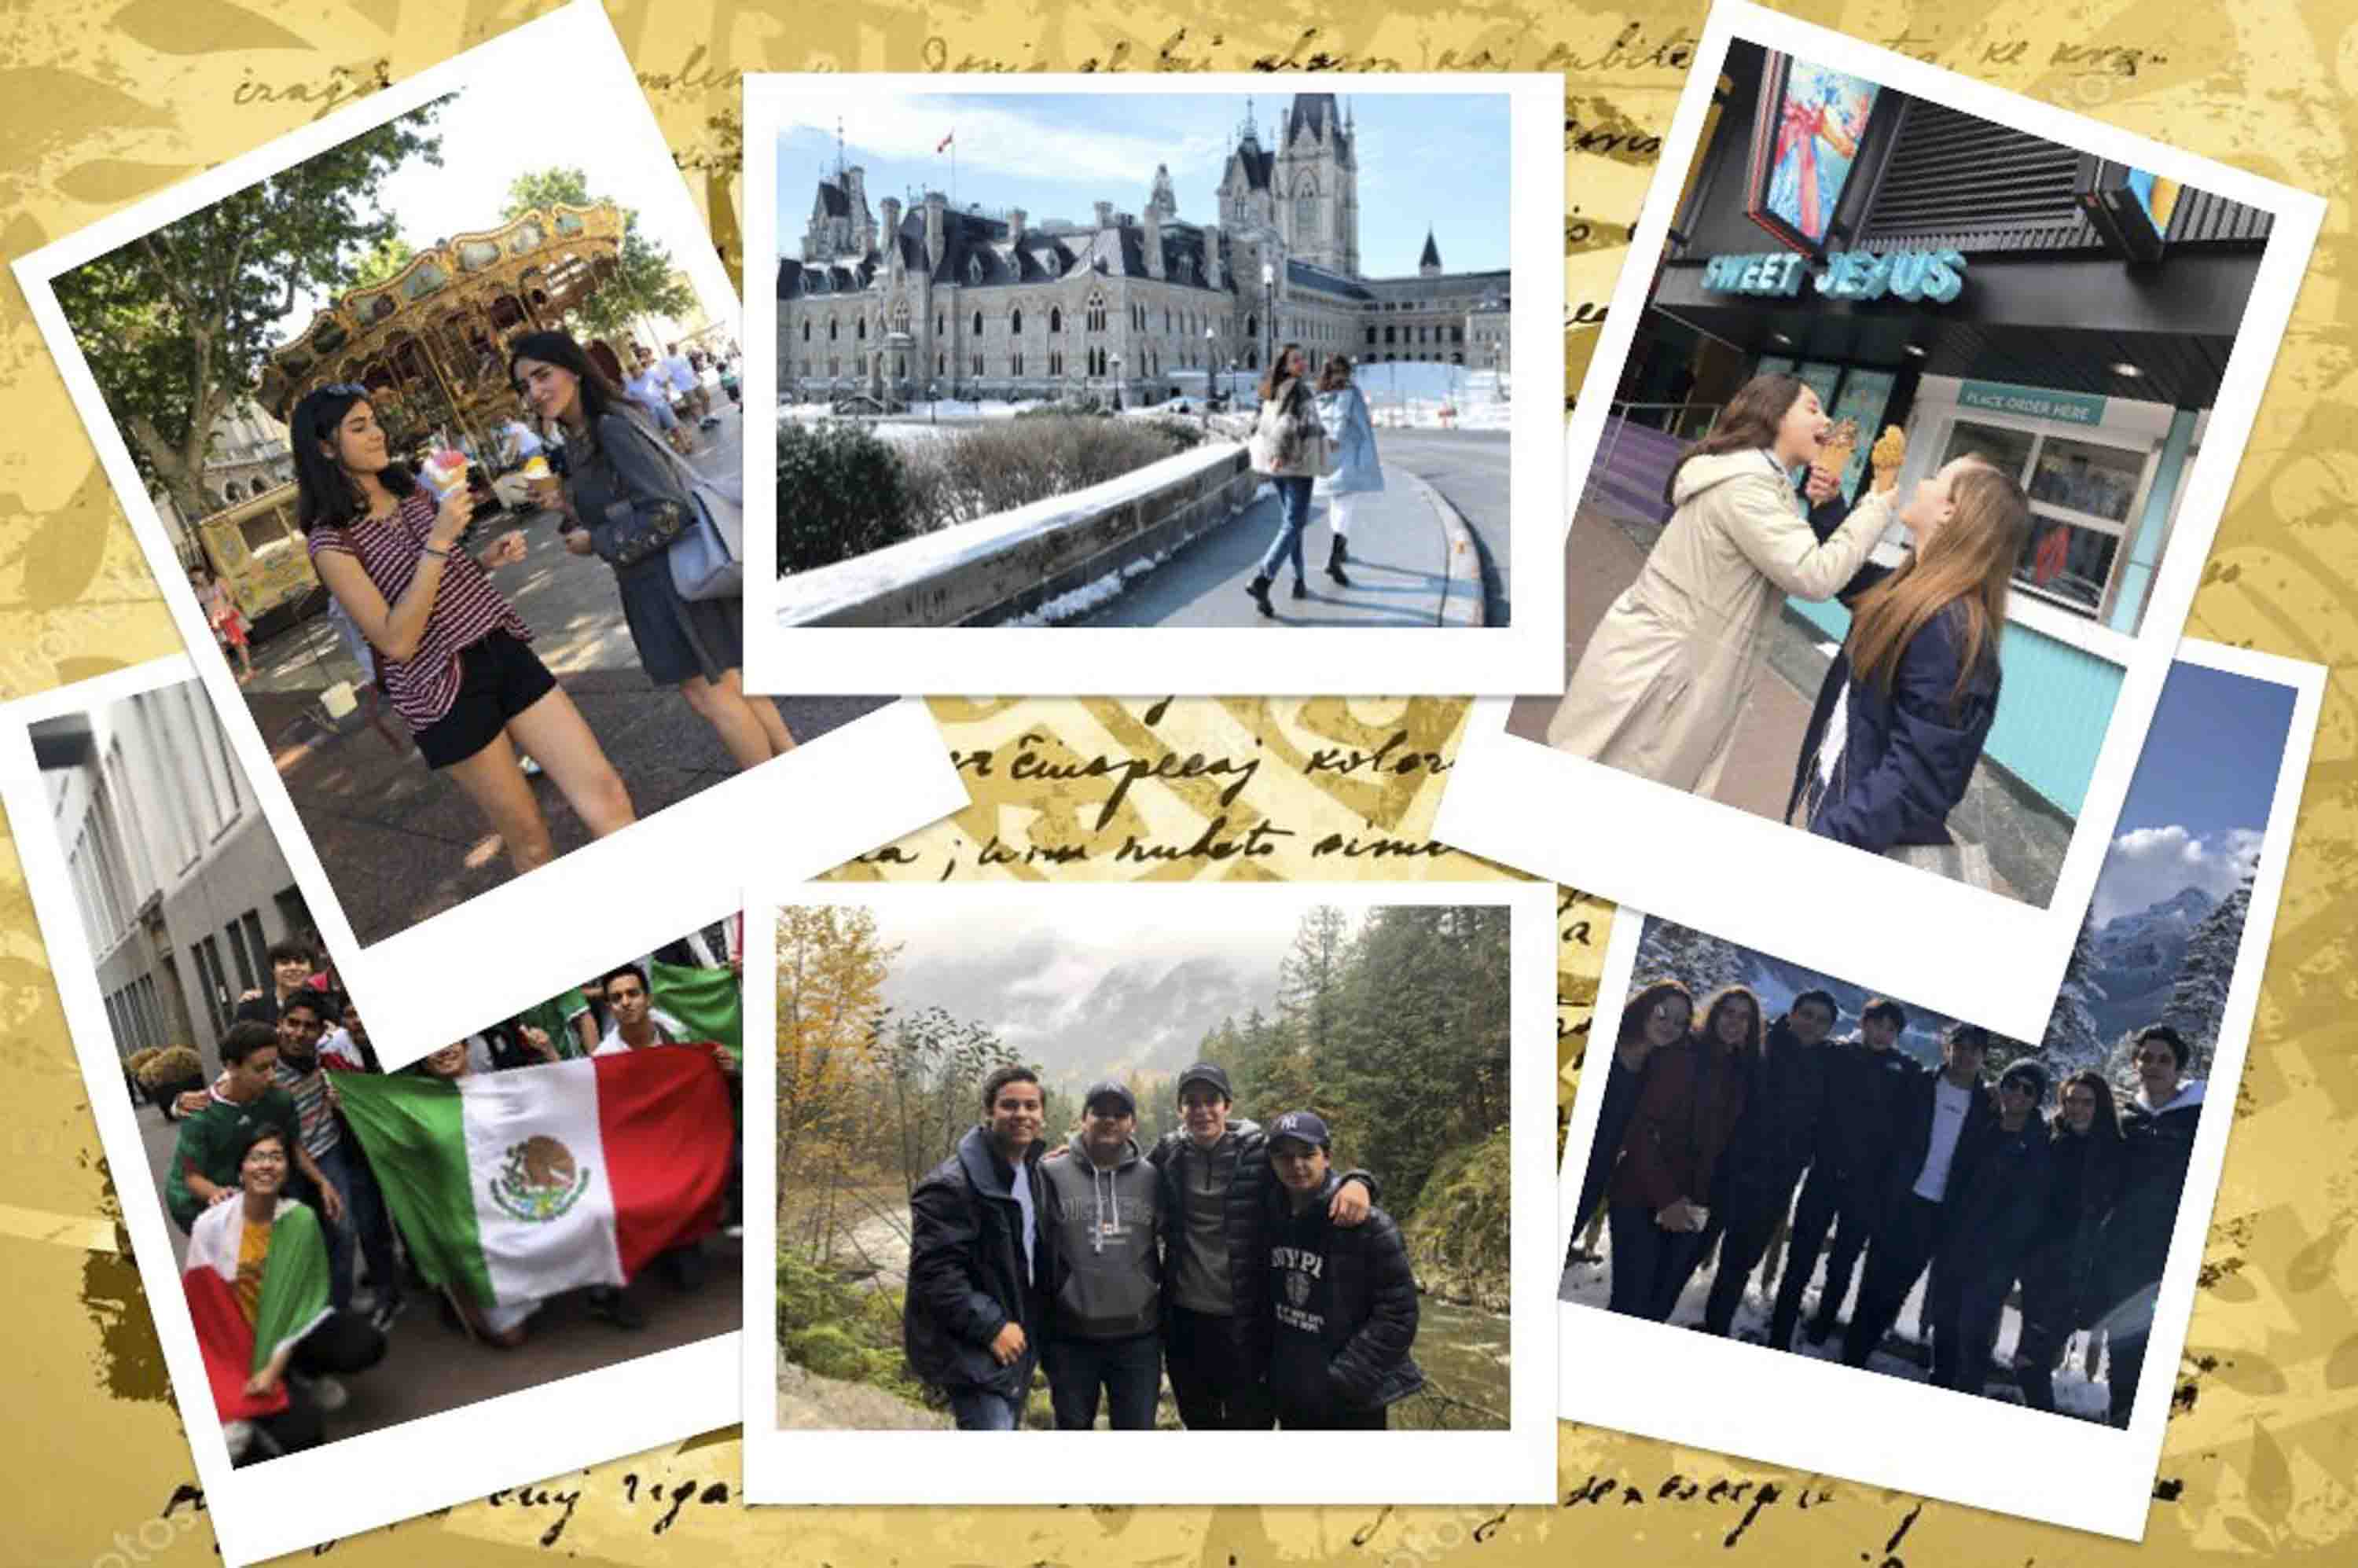 Experiencias internacionales por alumnos del Tec de Monterrey gracias a los programas internacionales.